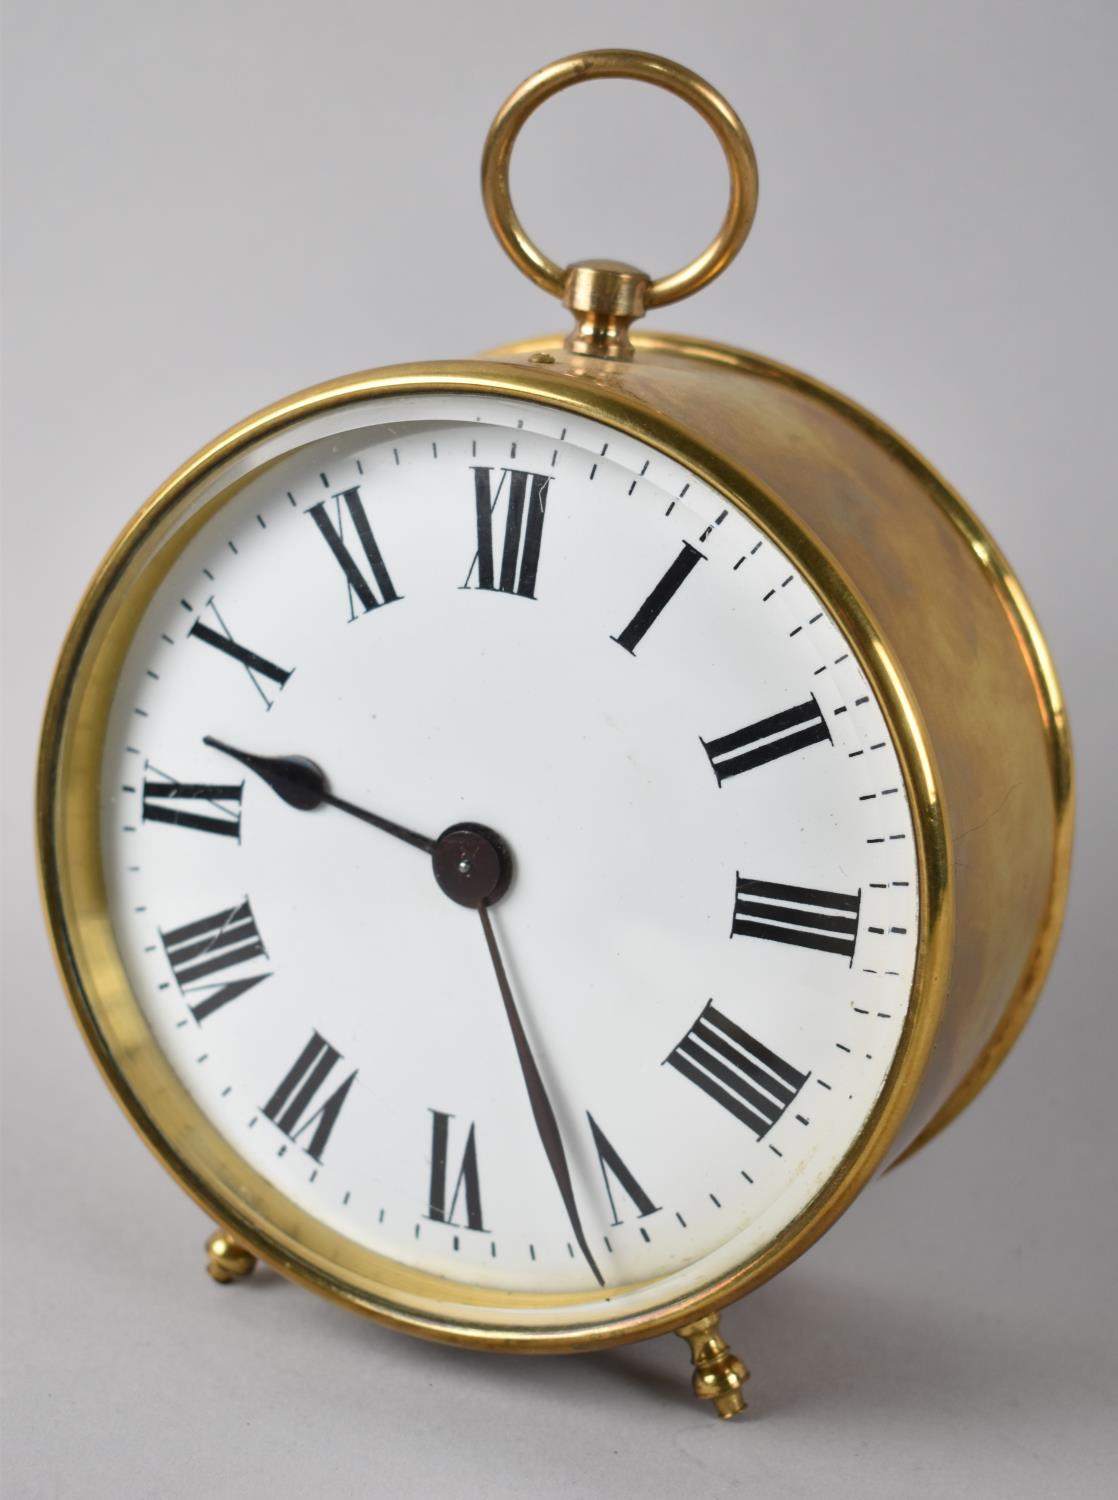 A Circular Brass Drum Clock, Movement Requires A Little Attention, 13.5cms Diameter